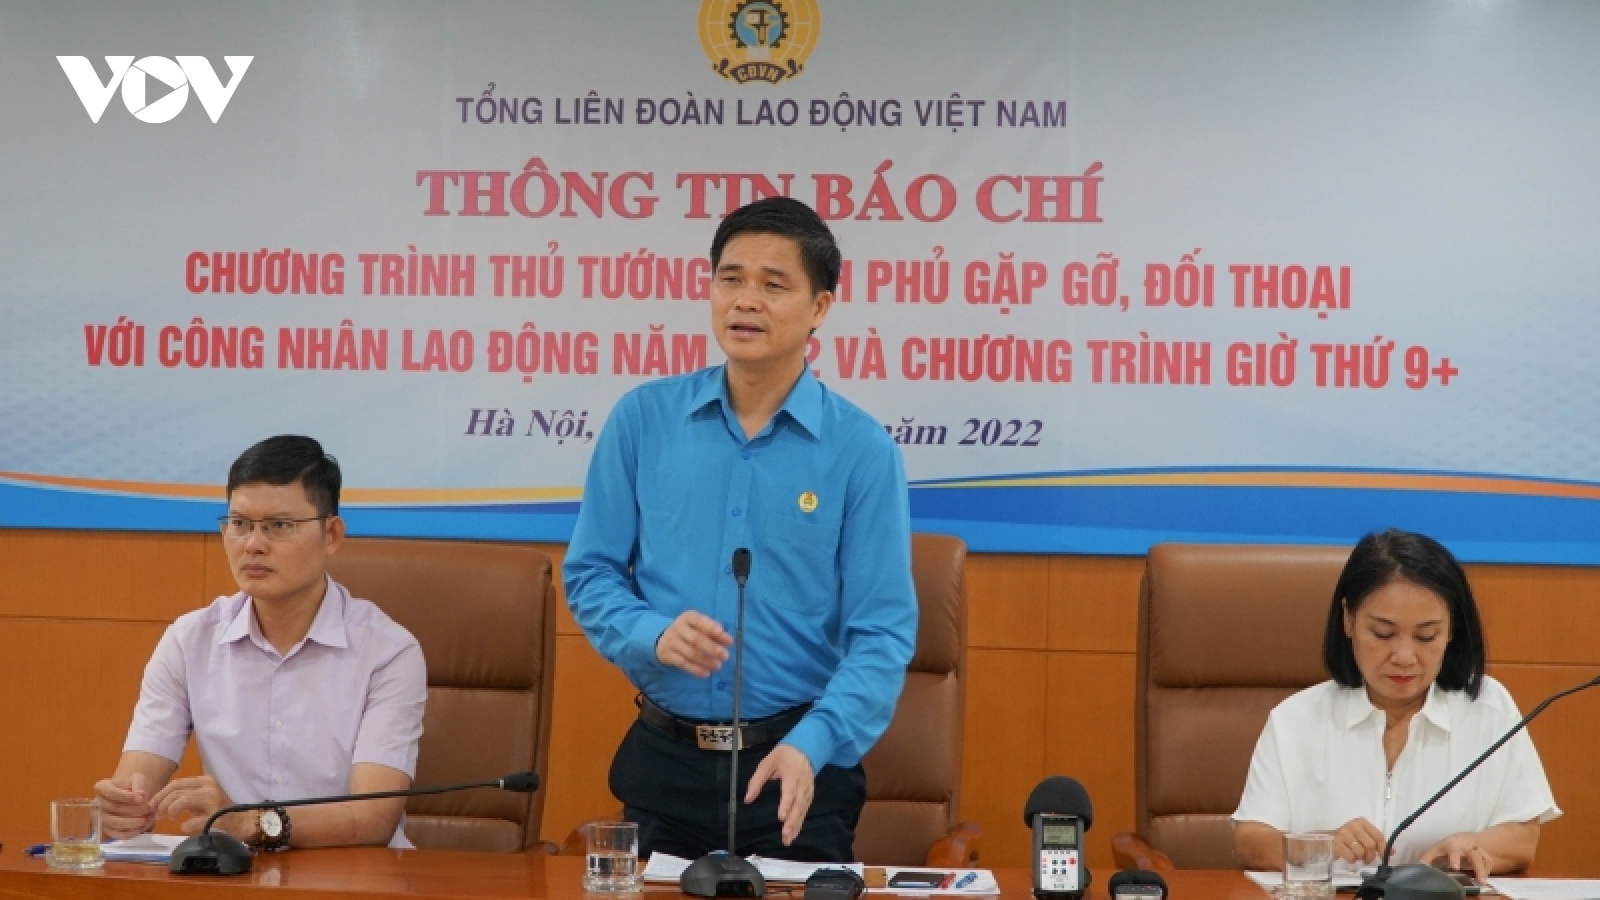 Ngày 12/6, Thủ tướng gặp gỡ, đối thoại với công nhân lao động tại tỉnh Bắc Giang